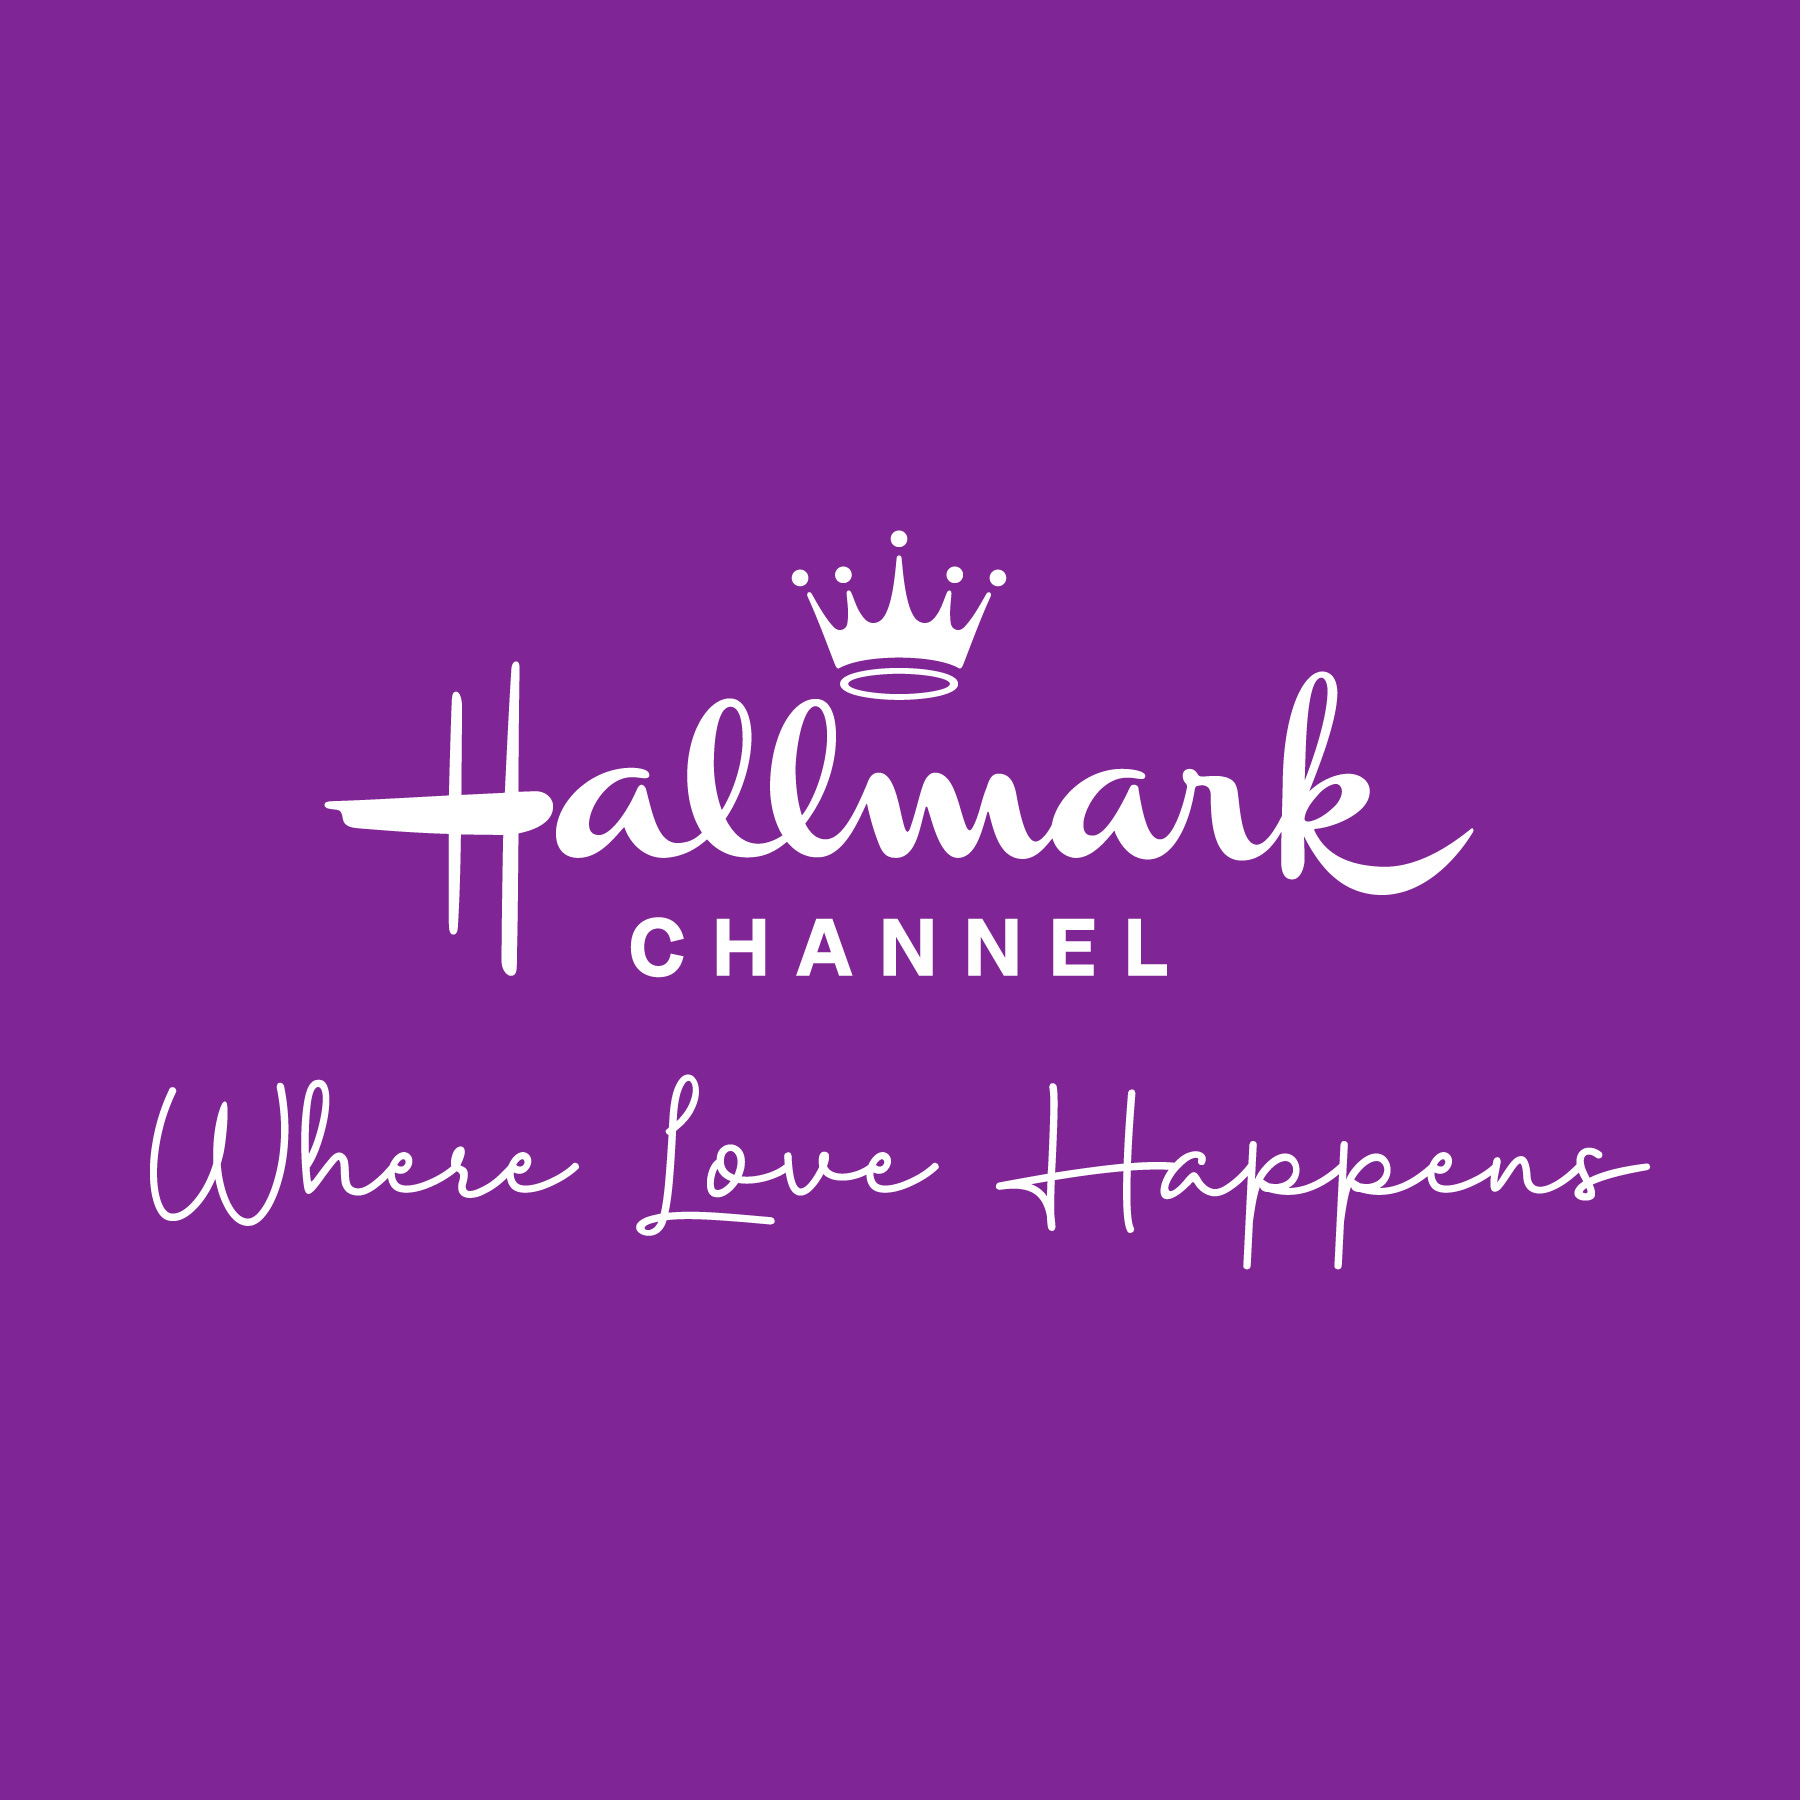 Hallmark Gold Crown Stores  Hallmark Corporate Information